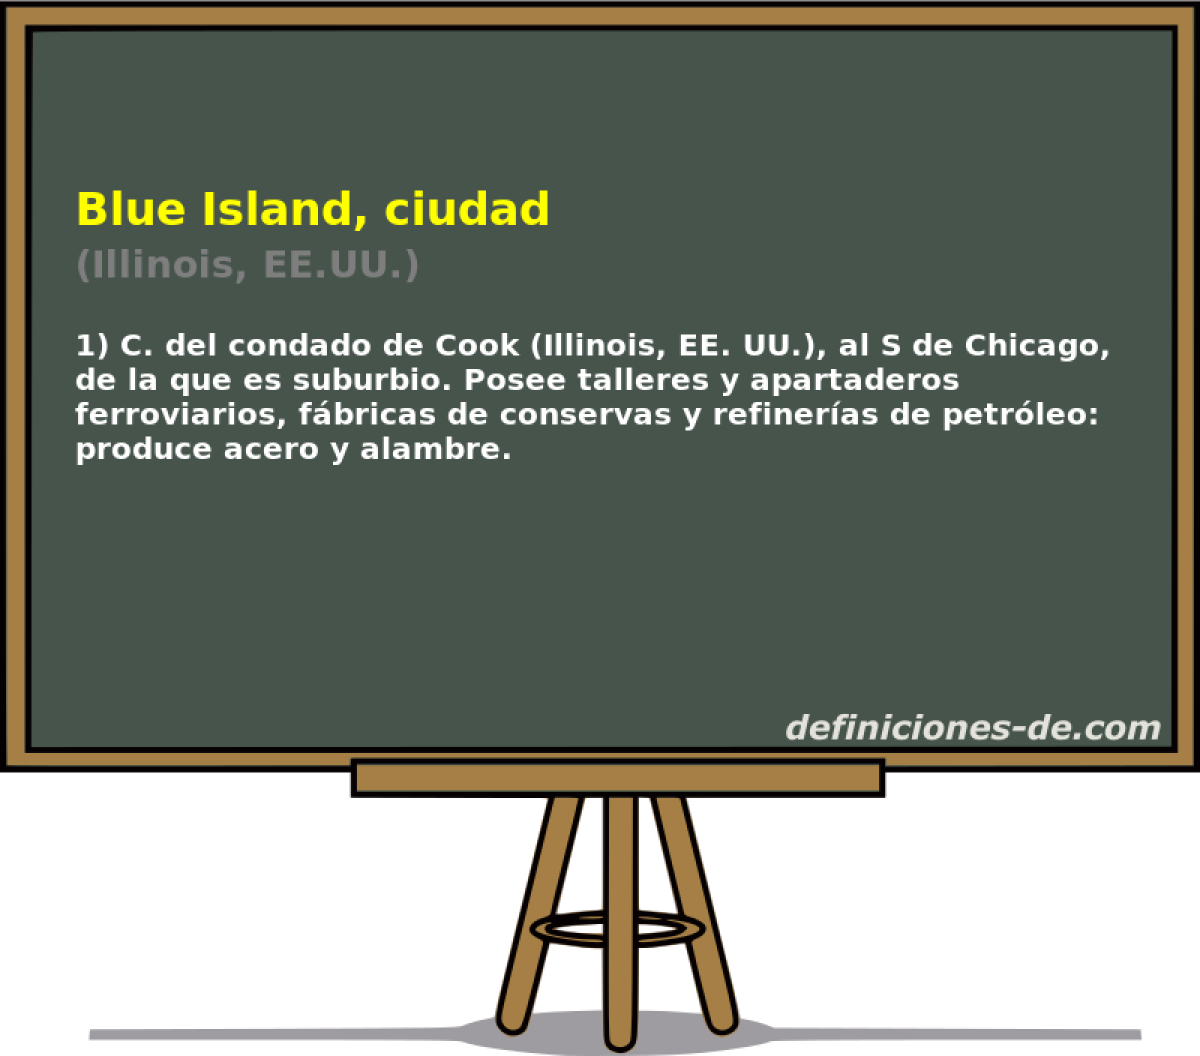 Blue Island, ciudad (Illinois, EE.UU.)